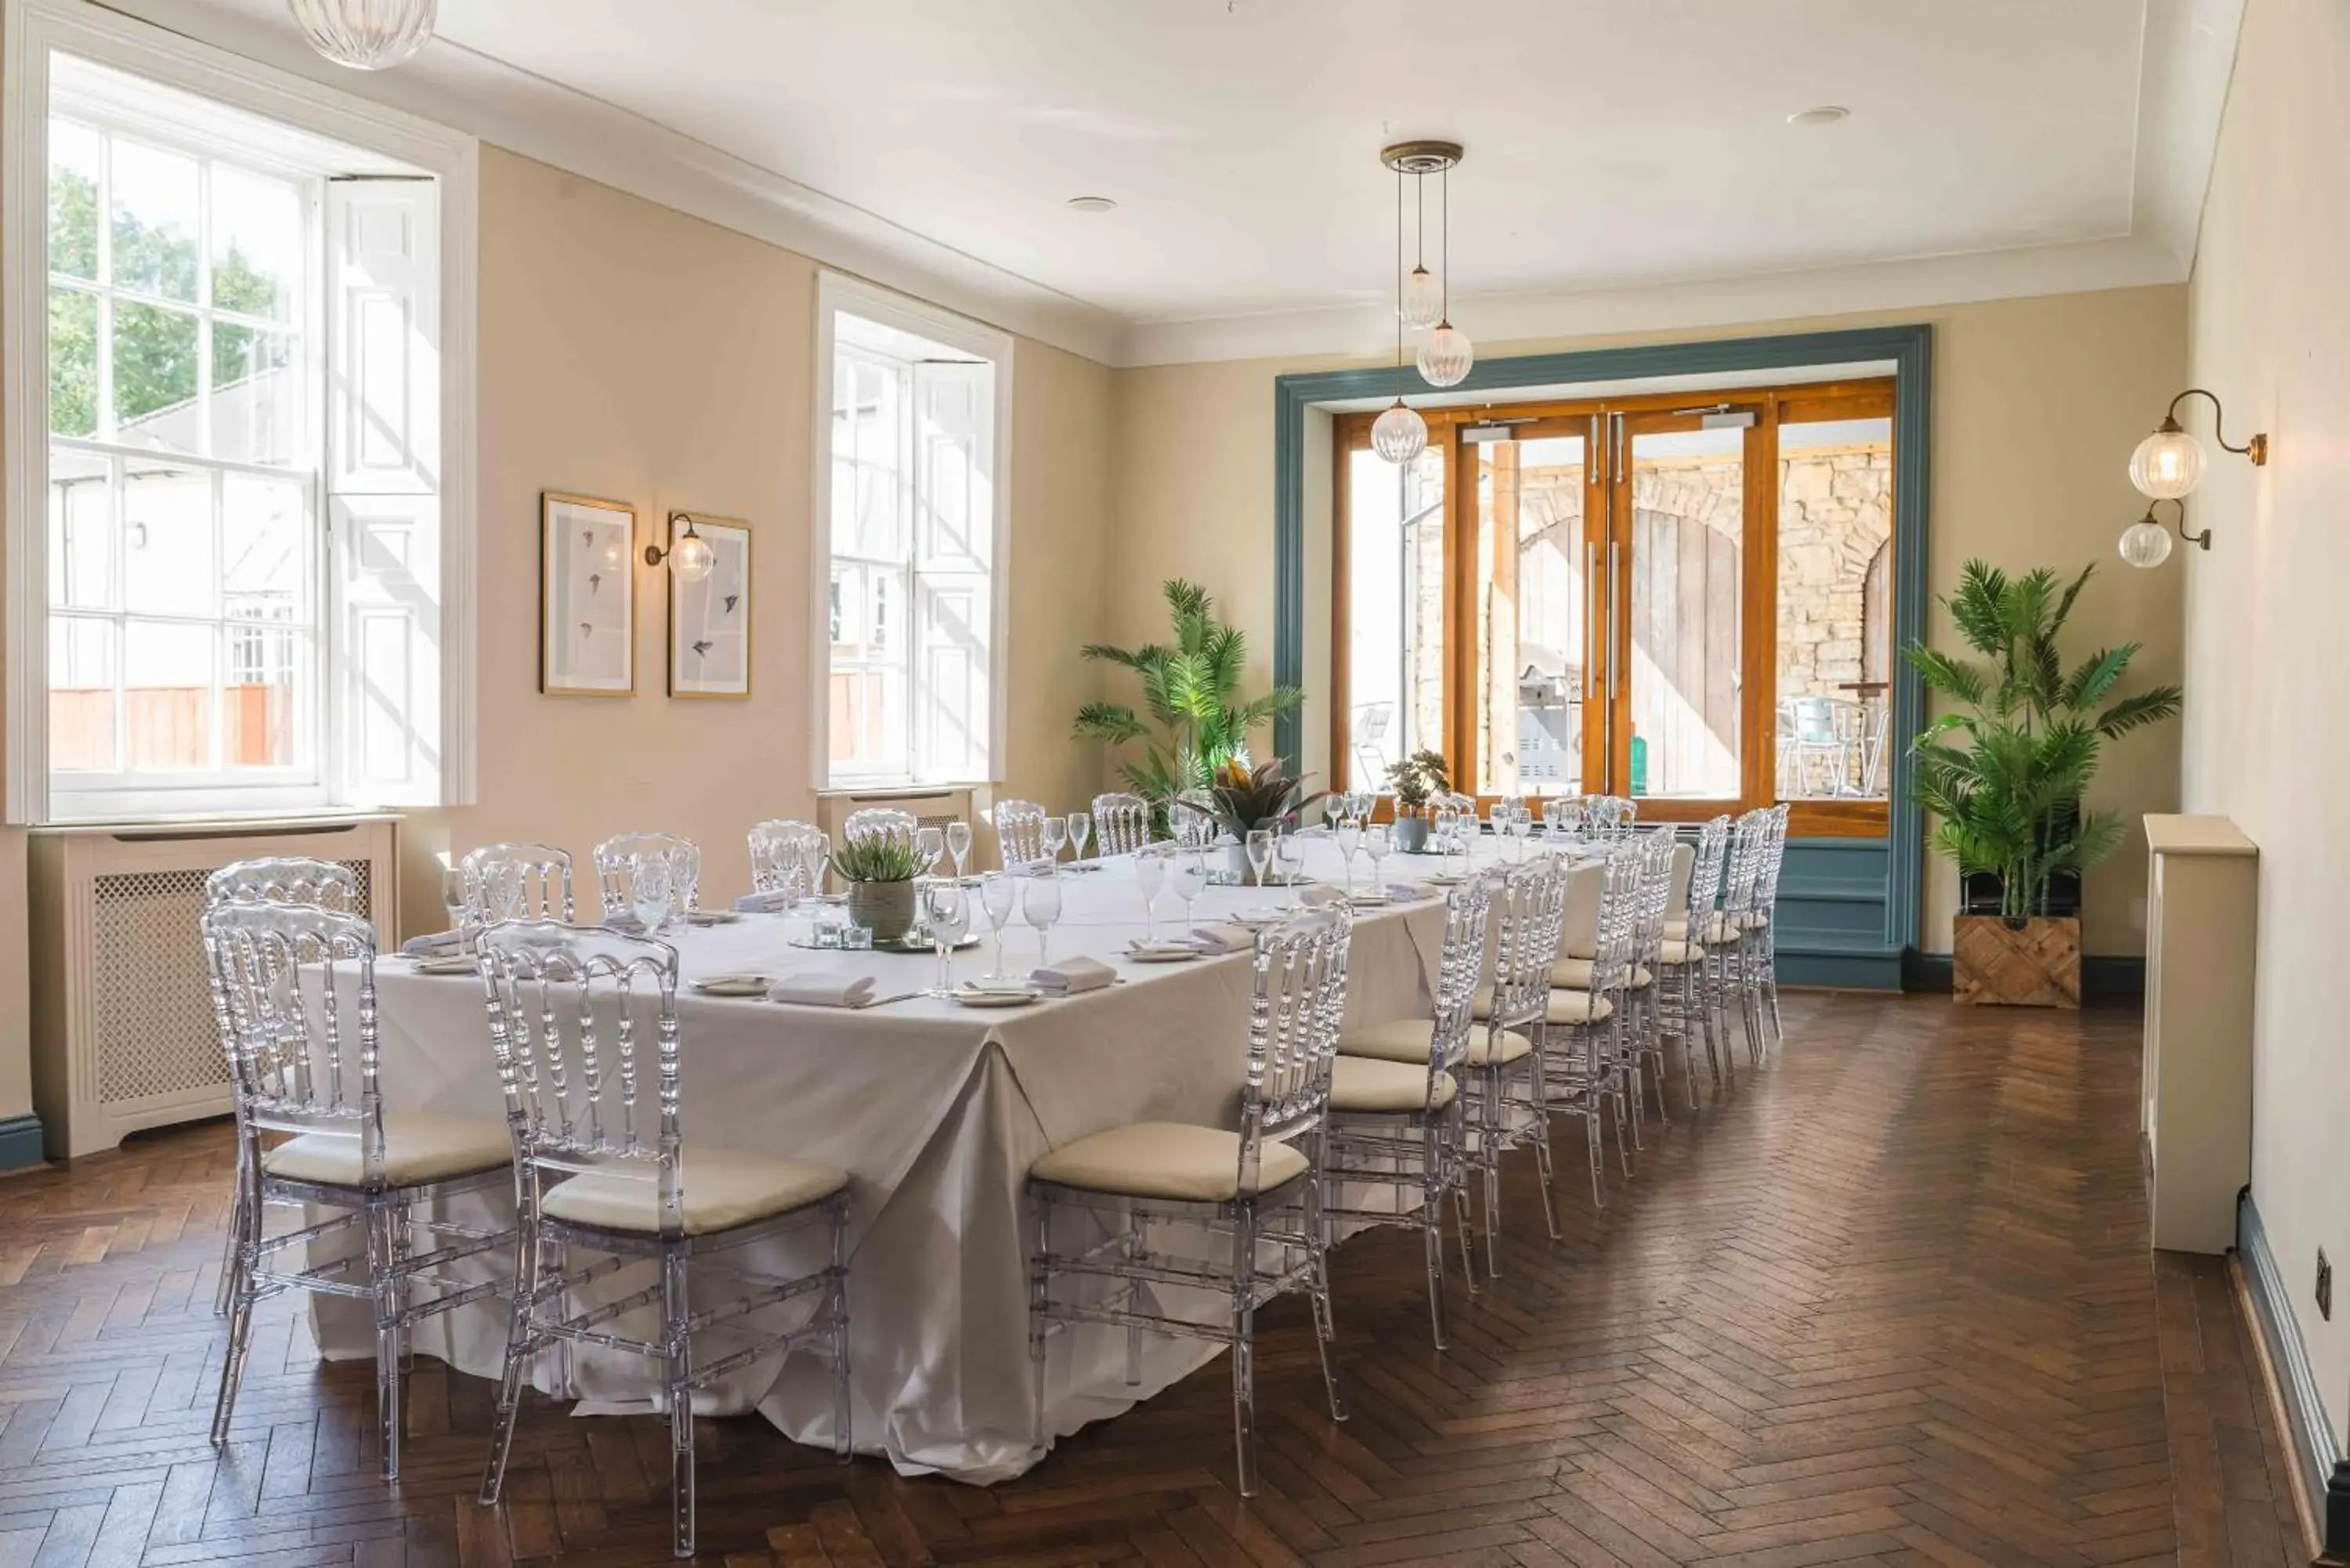 Banquet/Function facilities, Banquet Facilities in Hallgarth Manor House